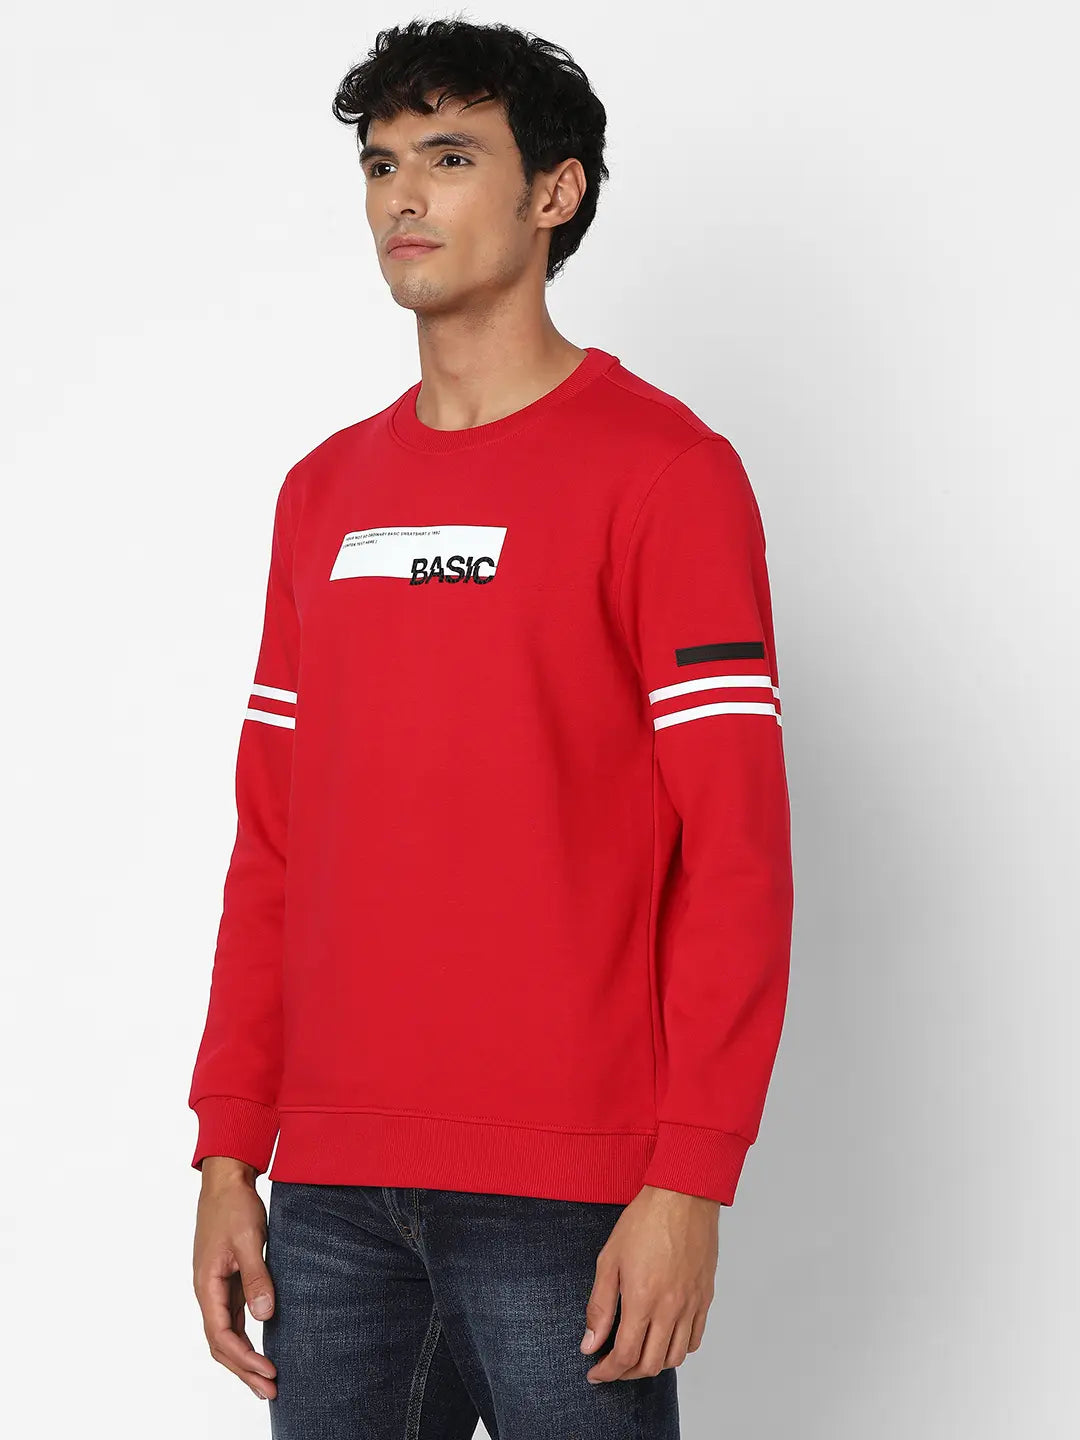 Spykar Men True Red Blended Slim Fit Full Sleeve Round Neck Printed Casual Sweatshirt